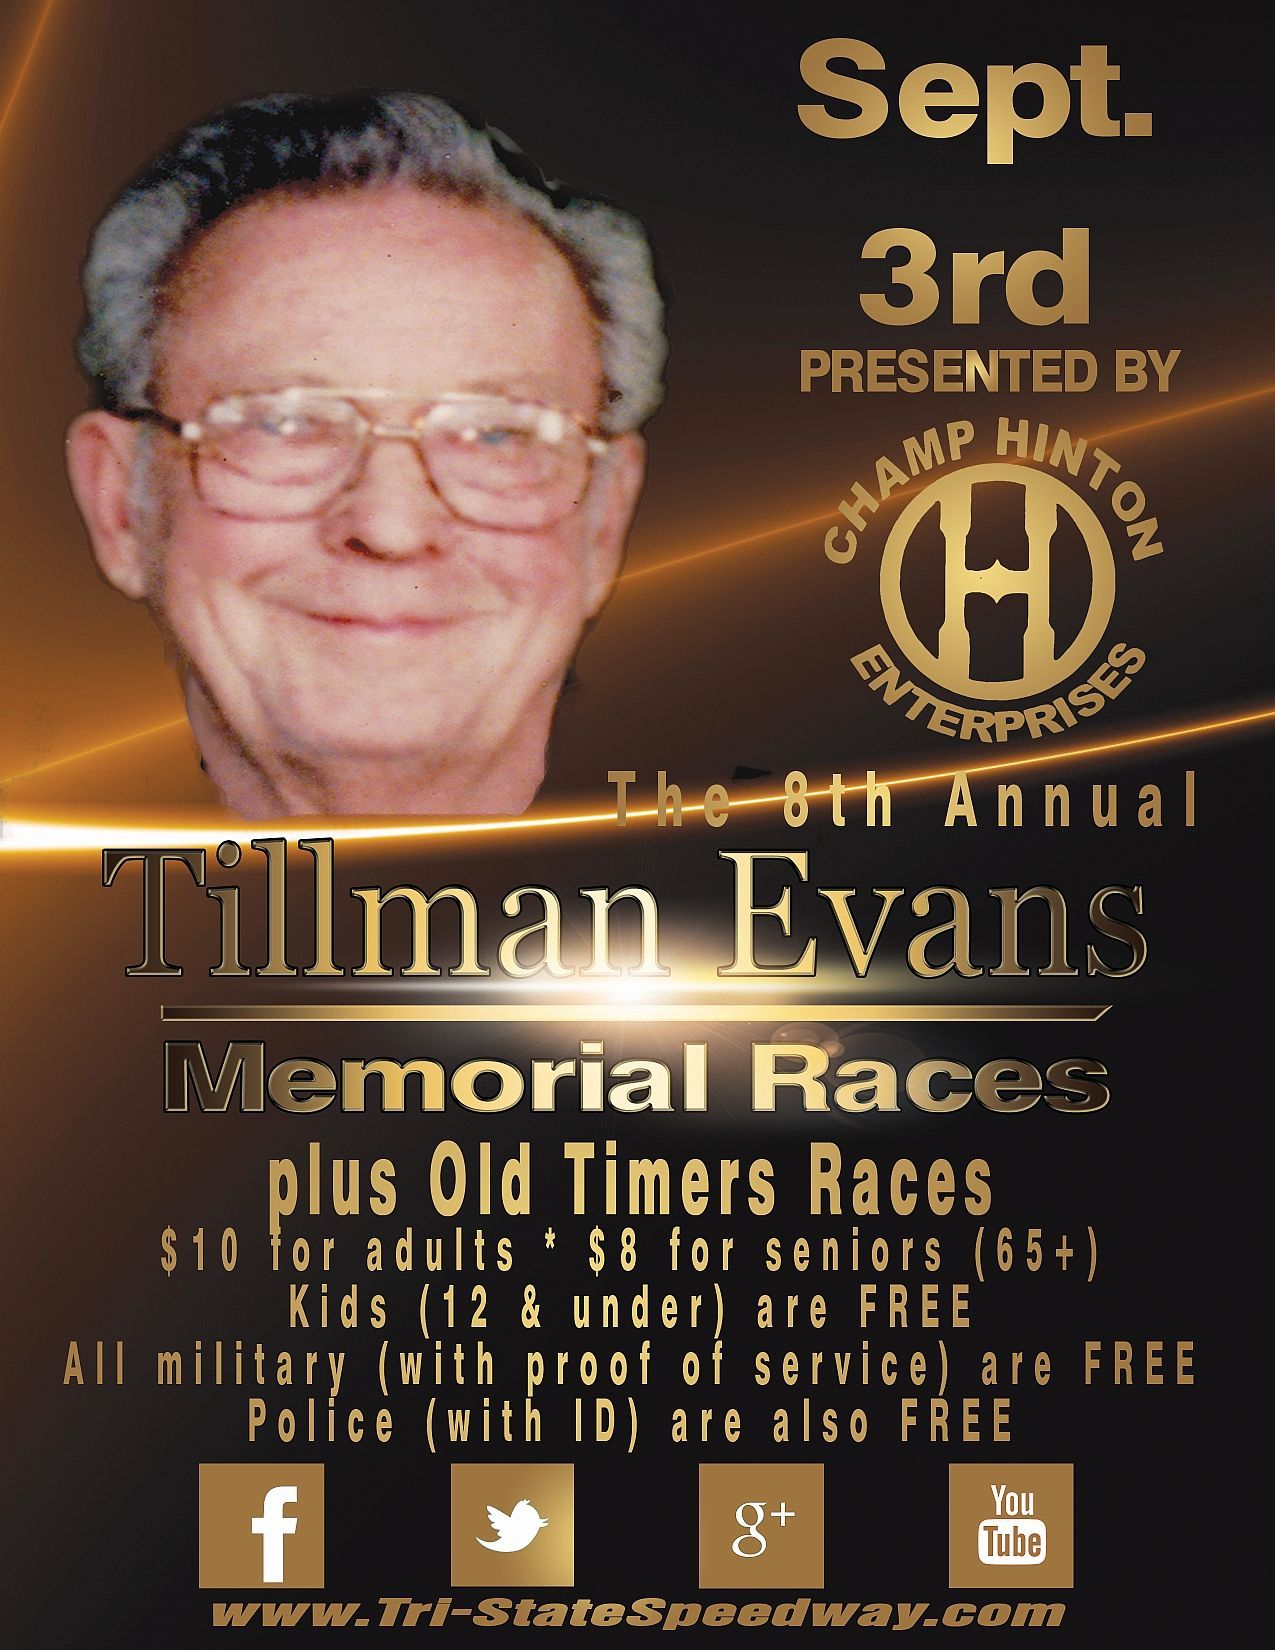 8th Annual Tillman Evans Memorial Races